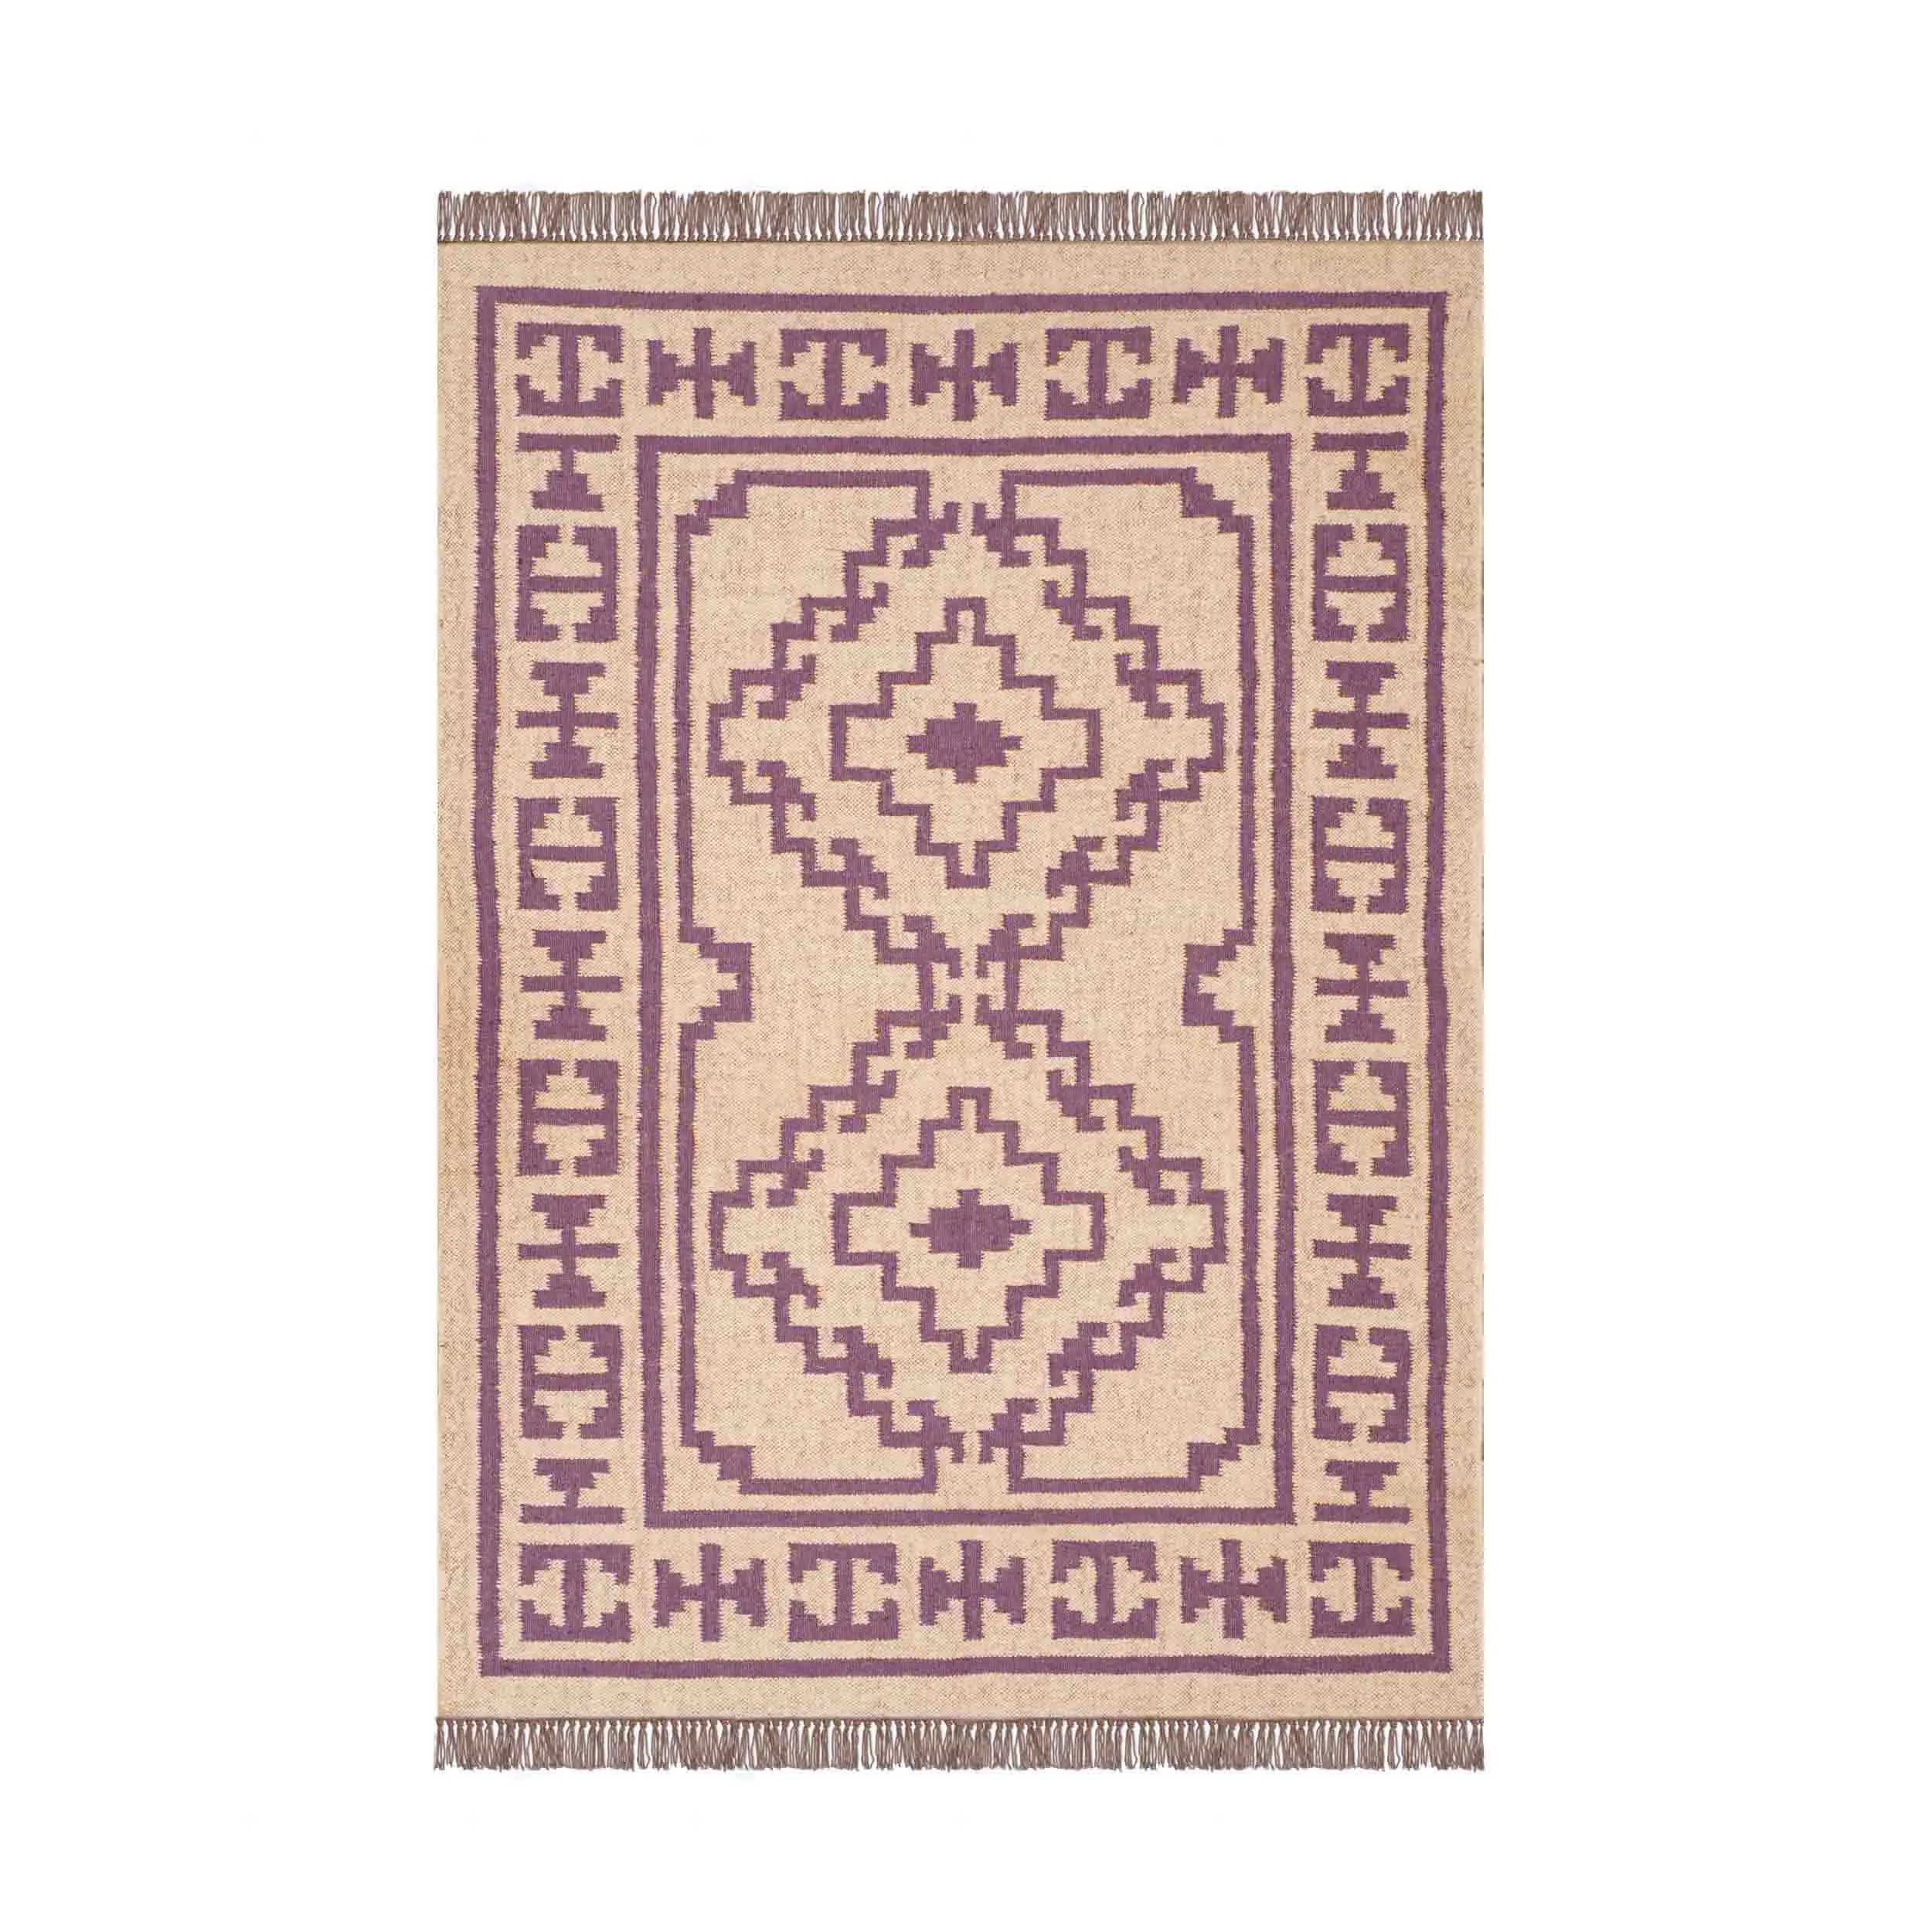 budhrajrugs Ikat Wool and Jute Handmade Kilim Rug for Outdoor/Indoor 100%  Washable Room Rugs Woolen Kilim Traditional Rug 4X6 Feet.